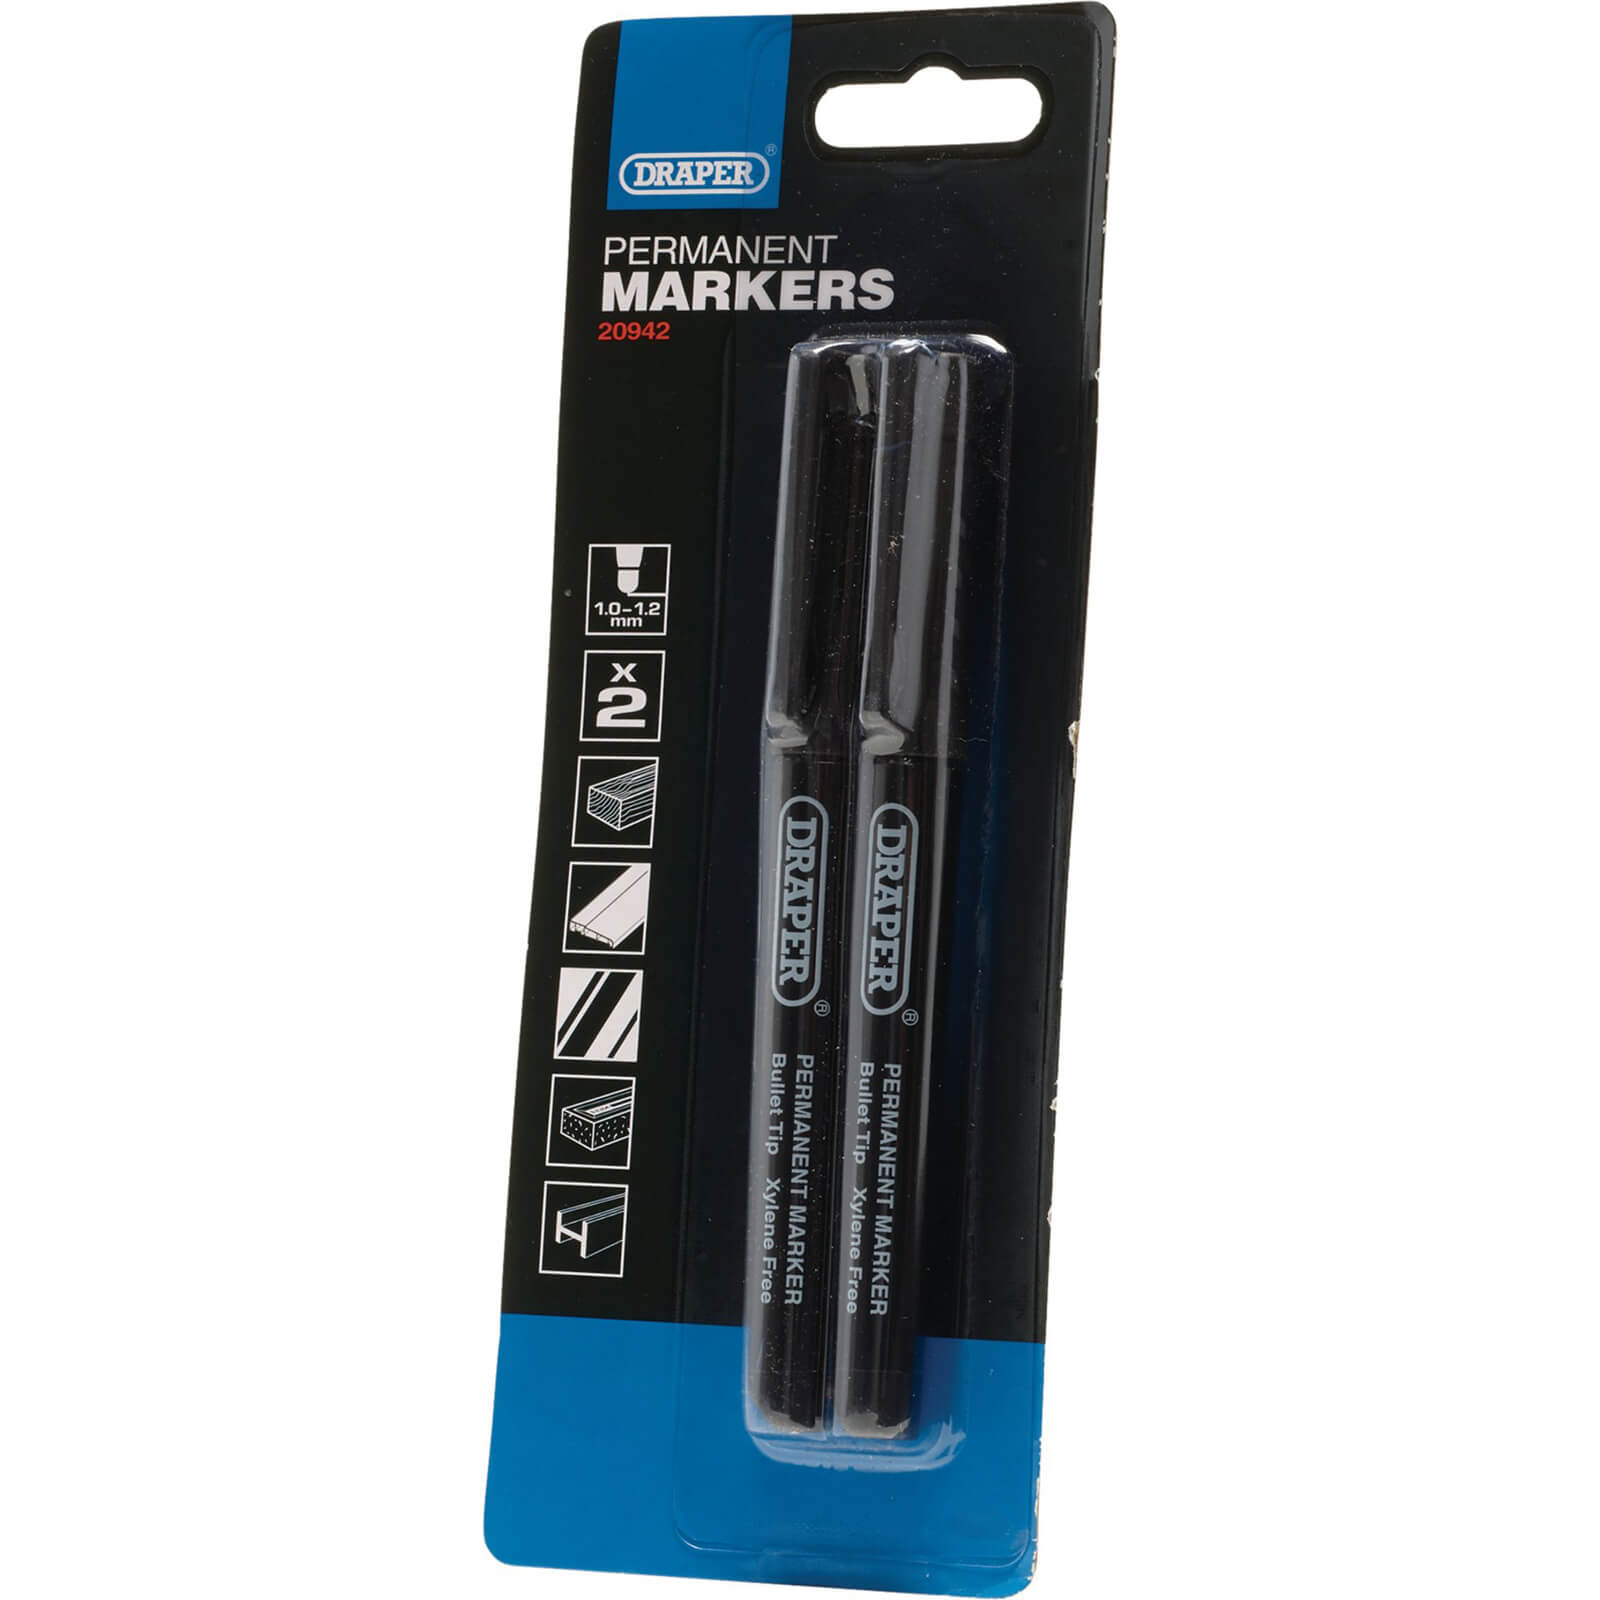 Image of Draper Permanent Marker Pen Black Pack of 2